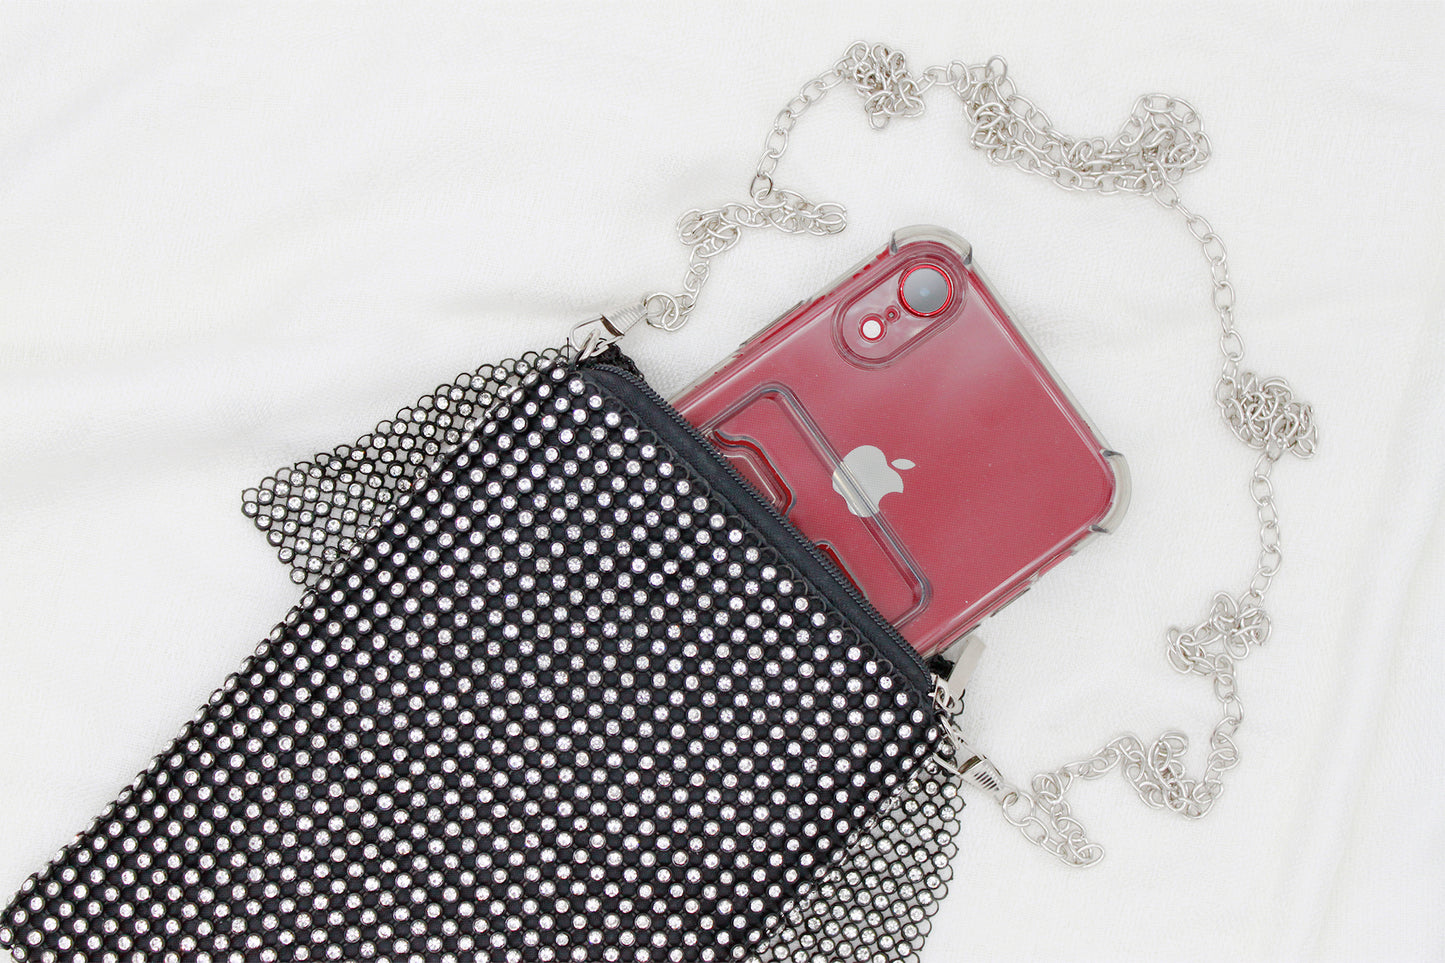 Bling Crystal Crossbody Cell Phone & Wallet Handbag - Black